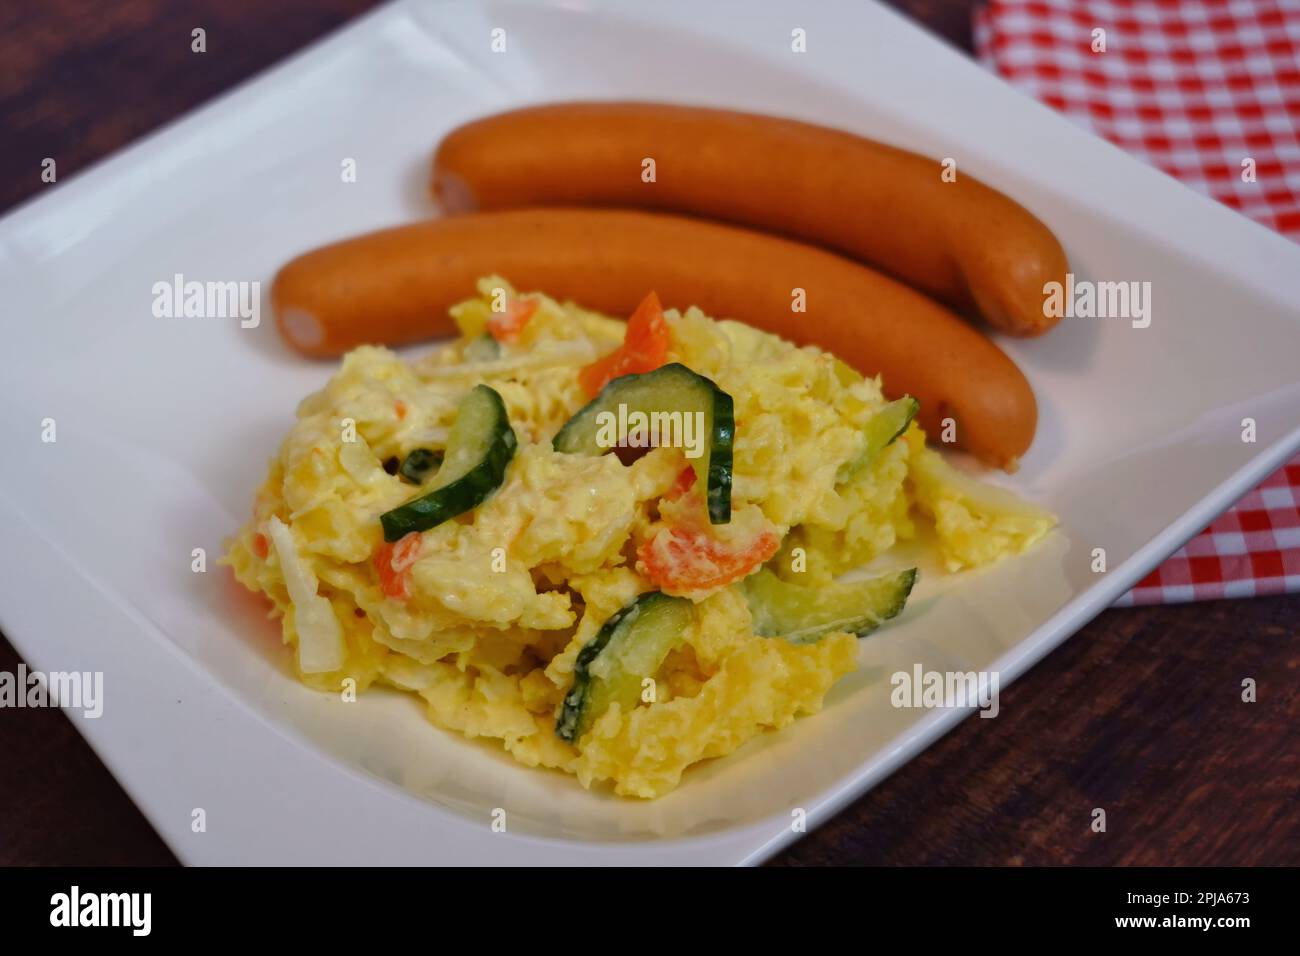 Salade de pommes de terre avec saucisses Wiener, un plat traditionnel et populaire en Allemagne. Banque D'Images